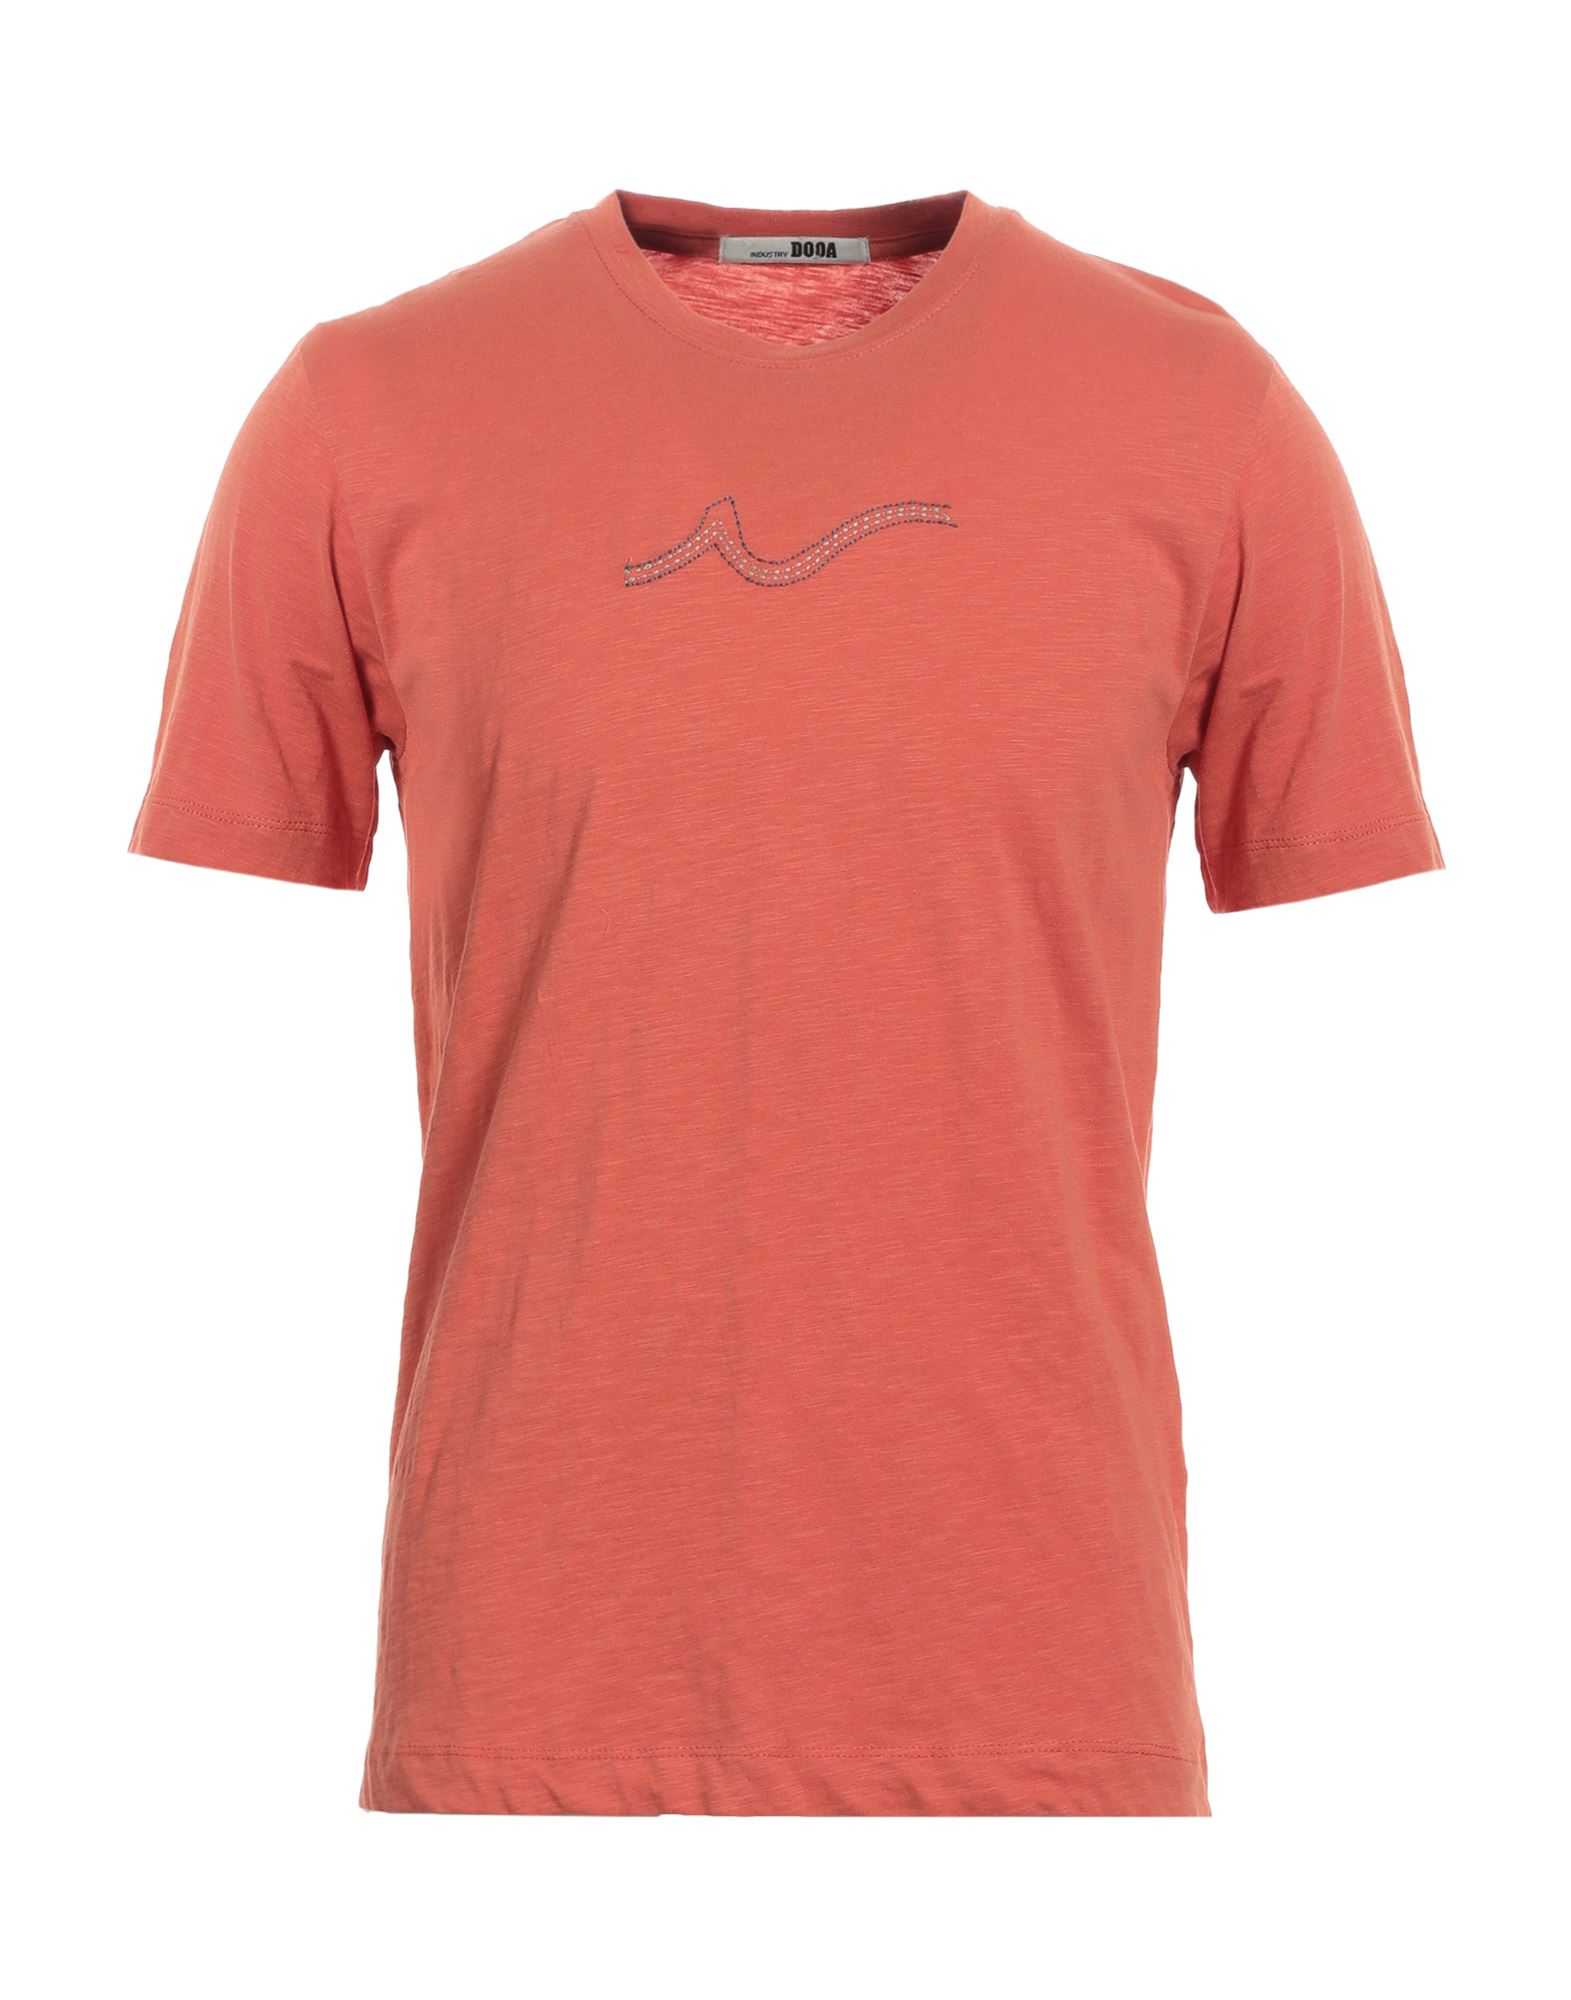 DOOA T-shirts Herren Orange von DOOA